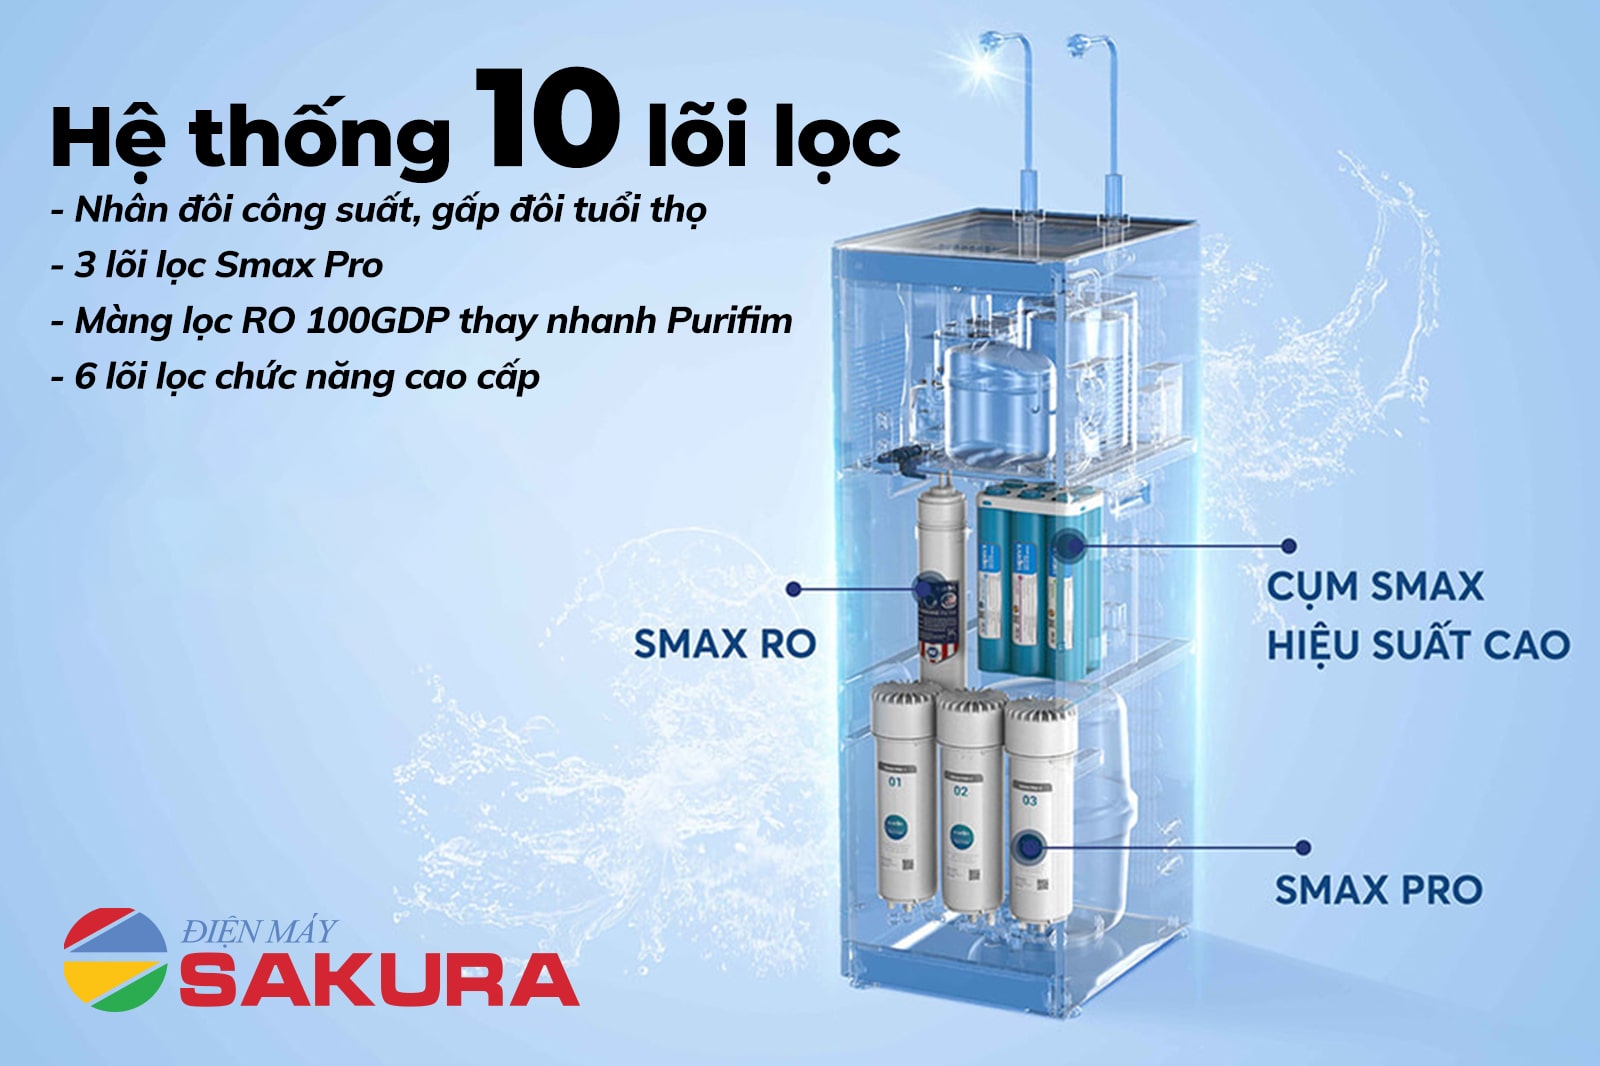 Hệ thống 10 lõi lọc gấp đôi tuổi thọ của máy lọc nước Karofi KAD - N89